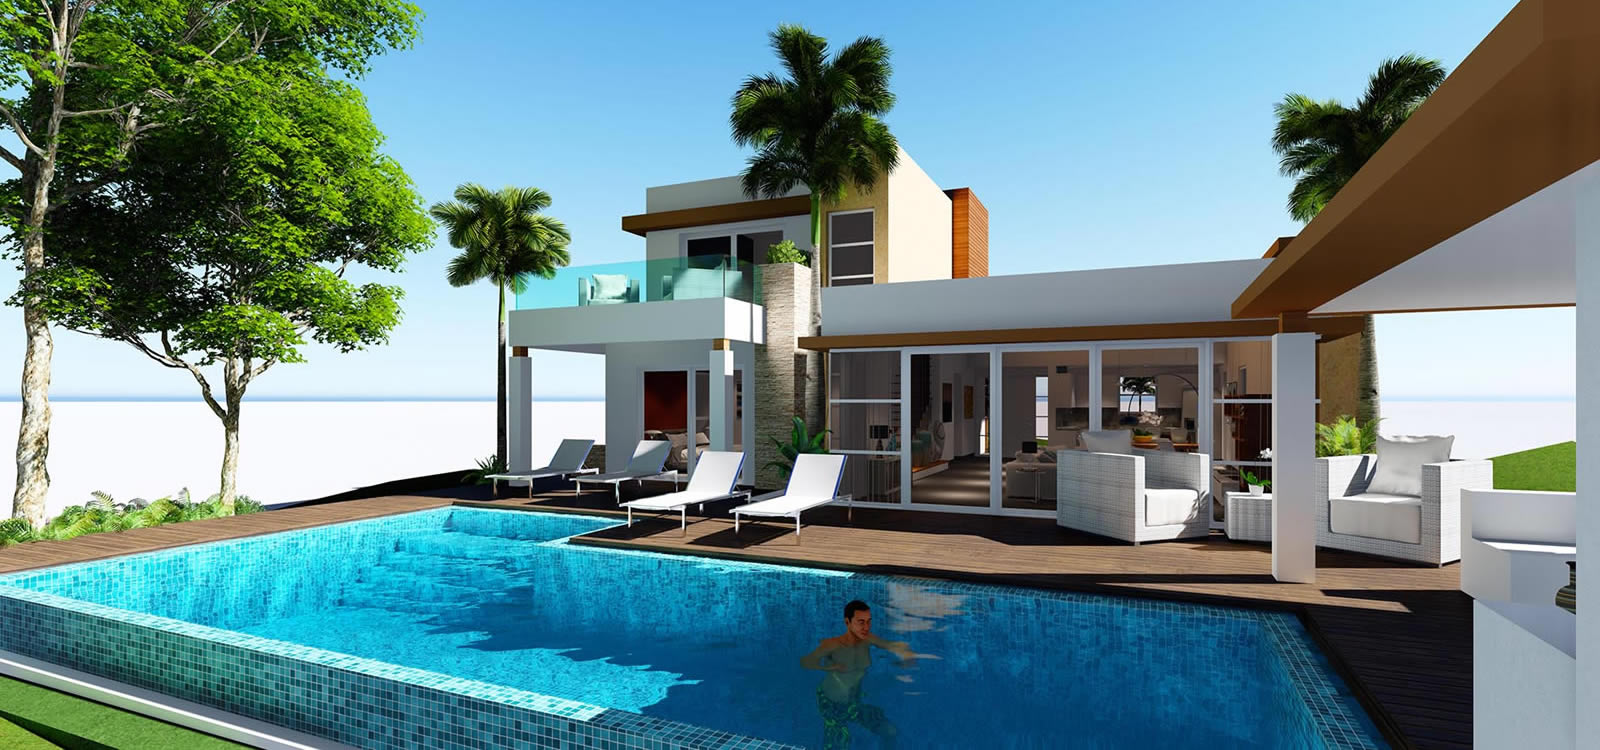 3 Bedroom Villas For Sale In Beach Resort Bayahibe Dominican Republic